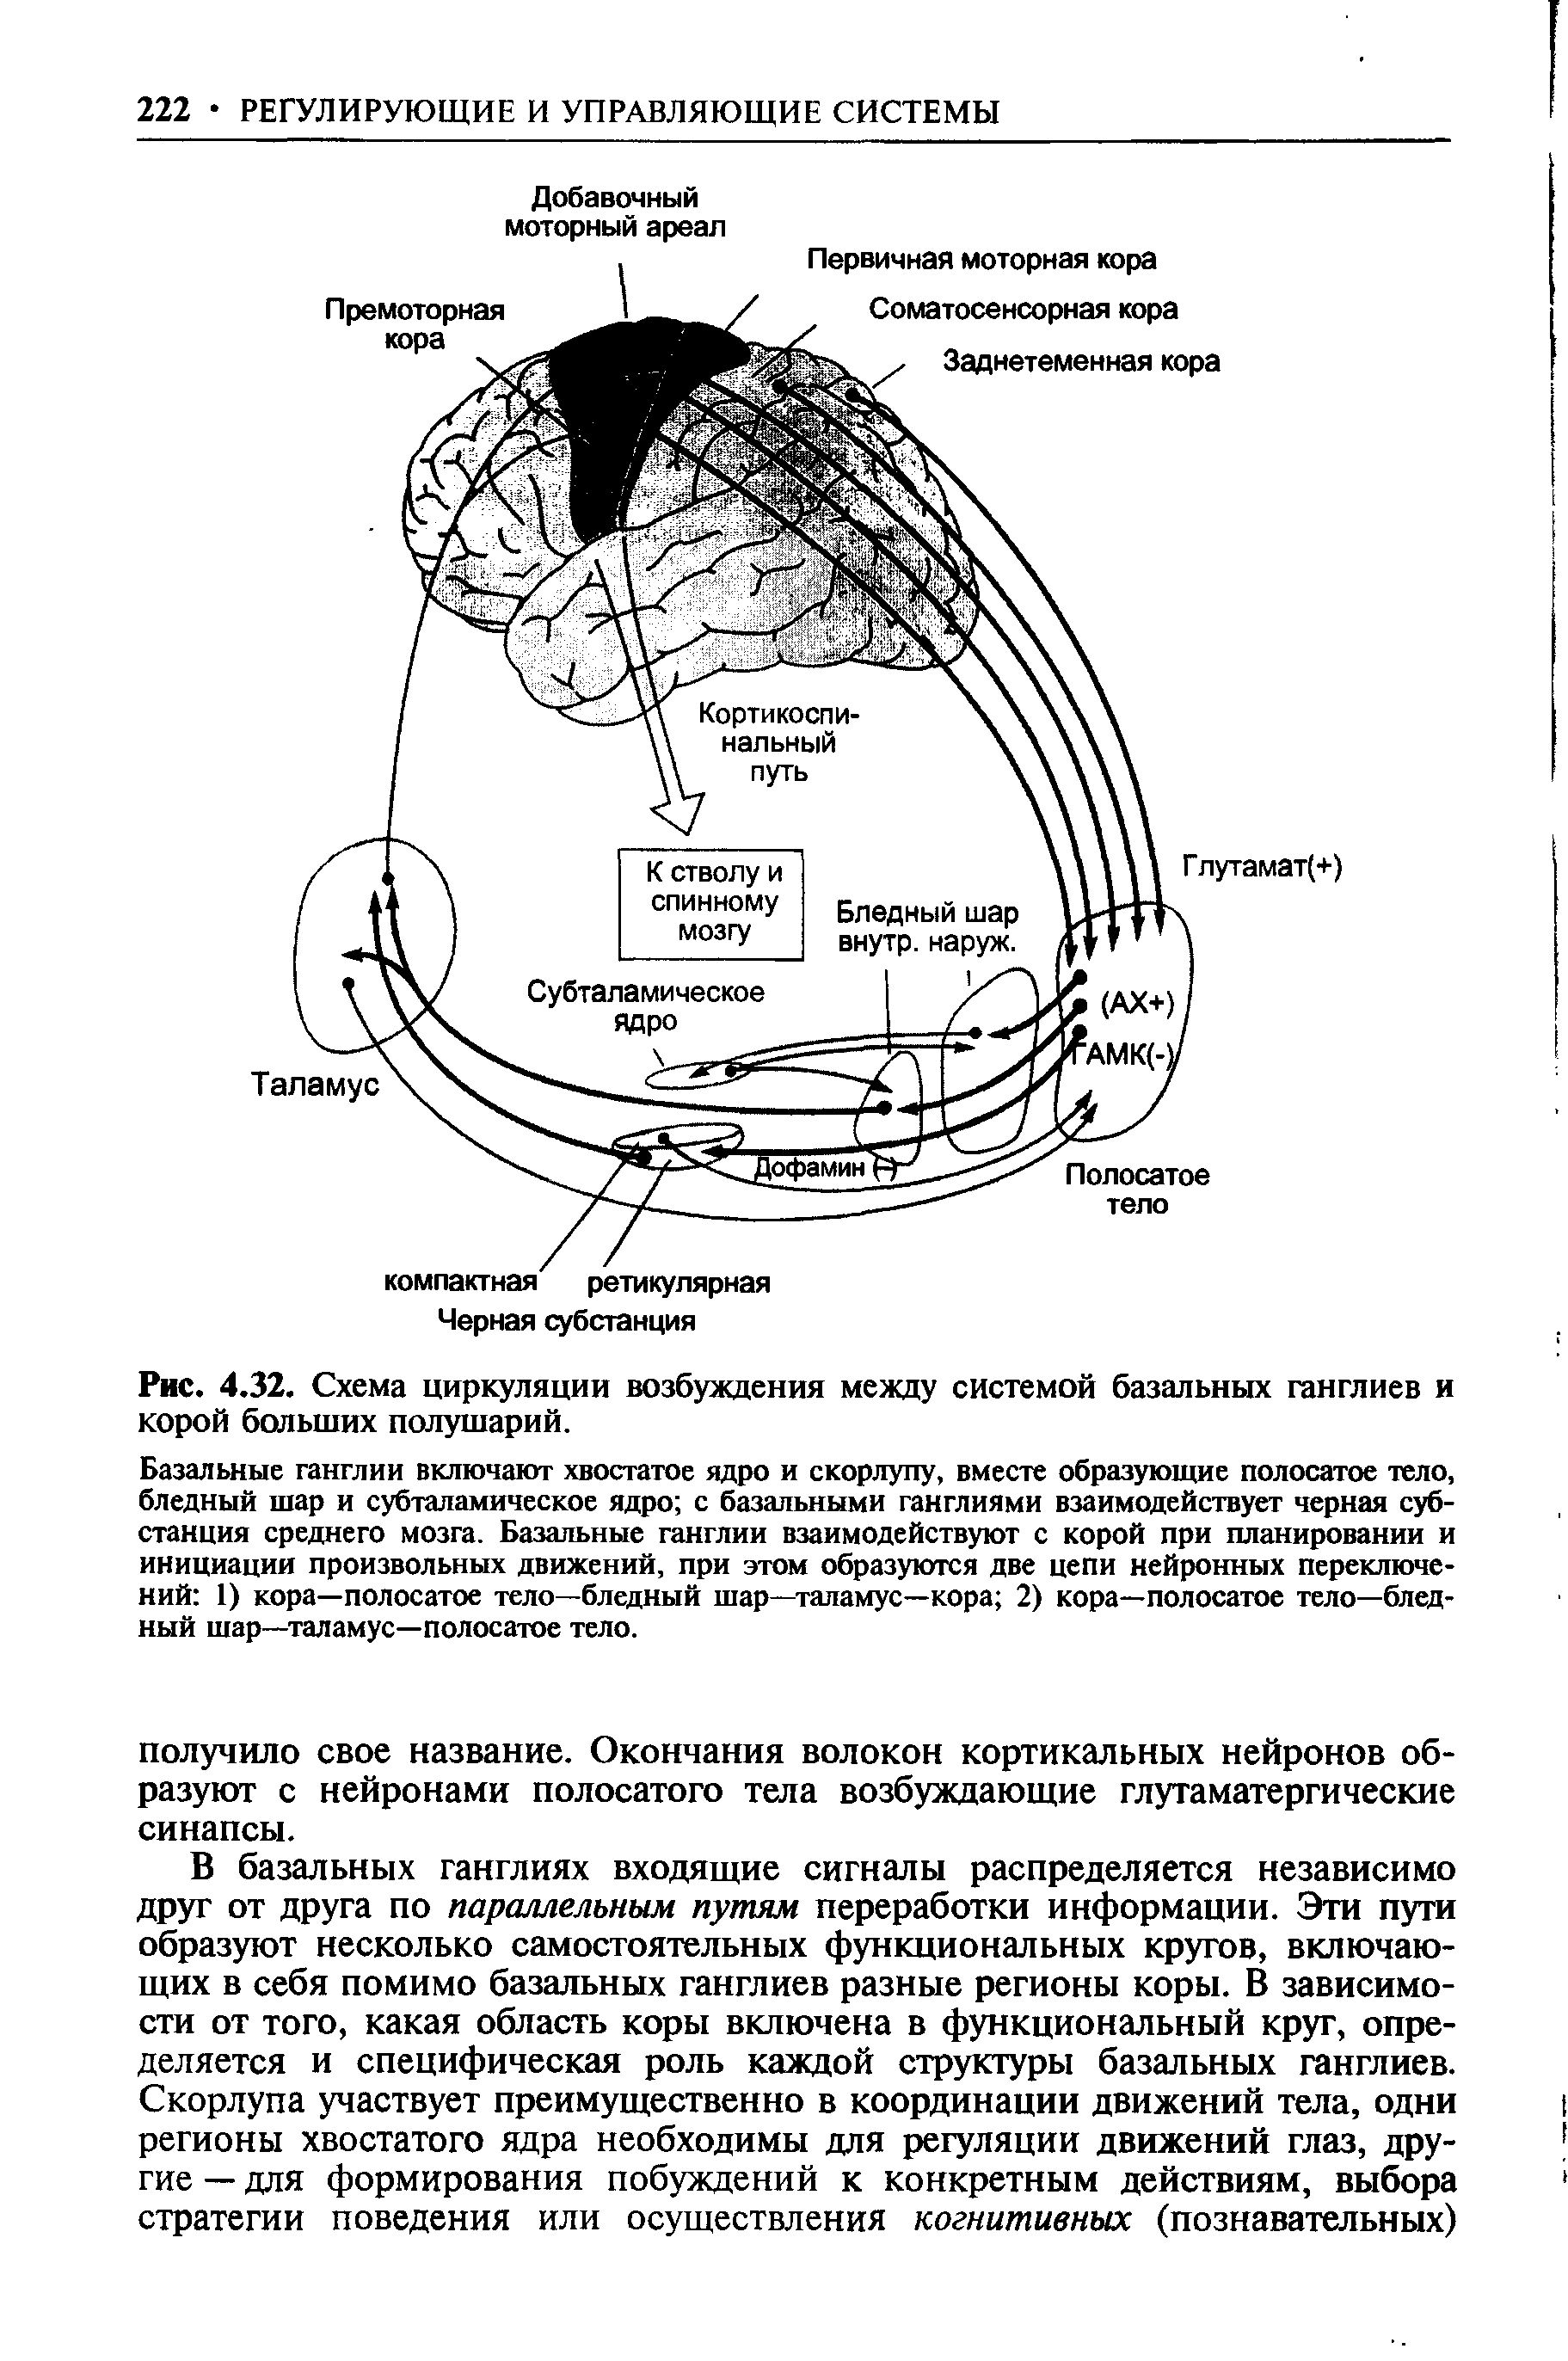 Рис. 4.32. Схема циркуляции возбуждения между системой базальных ганглиев и корой больших полушарий.